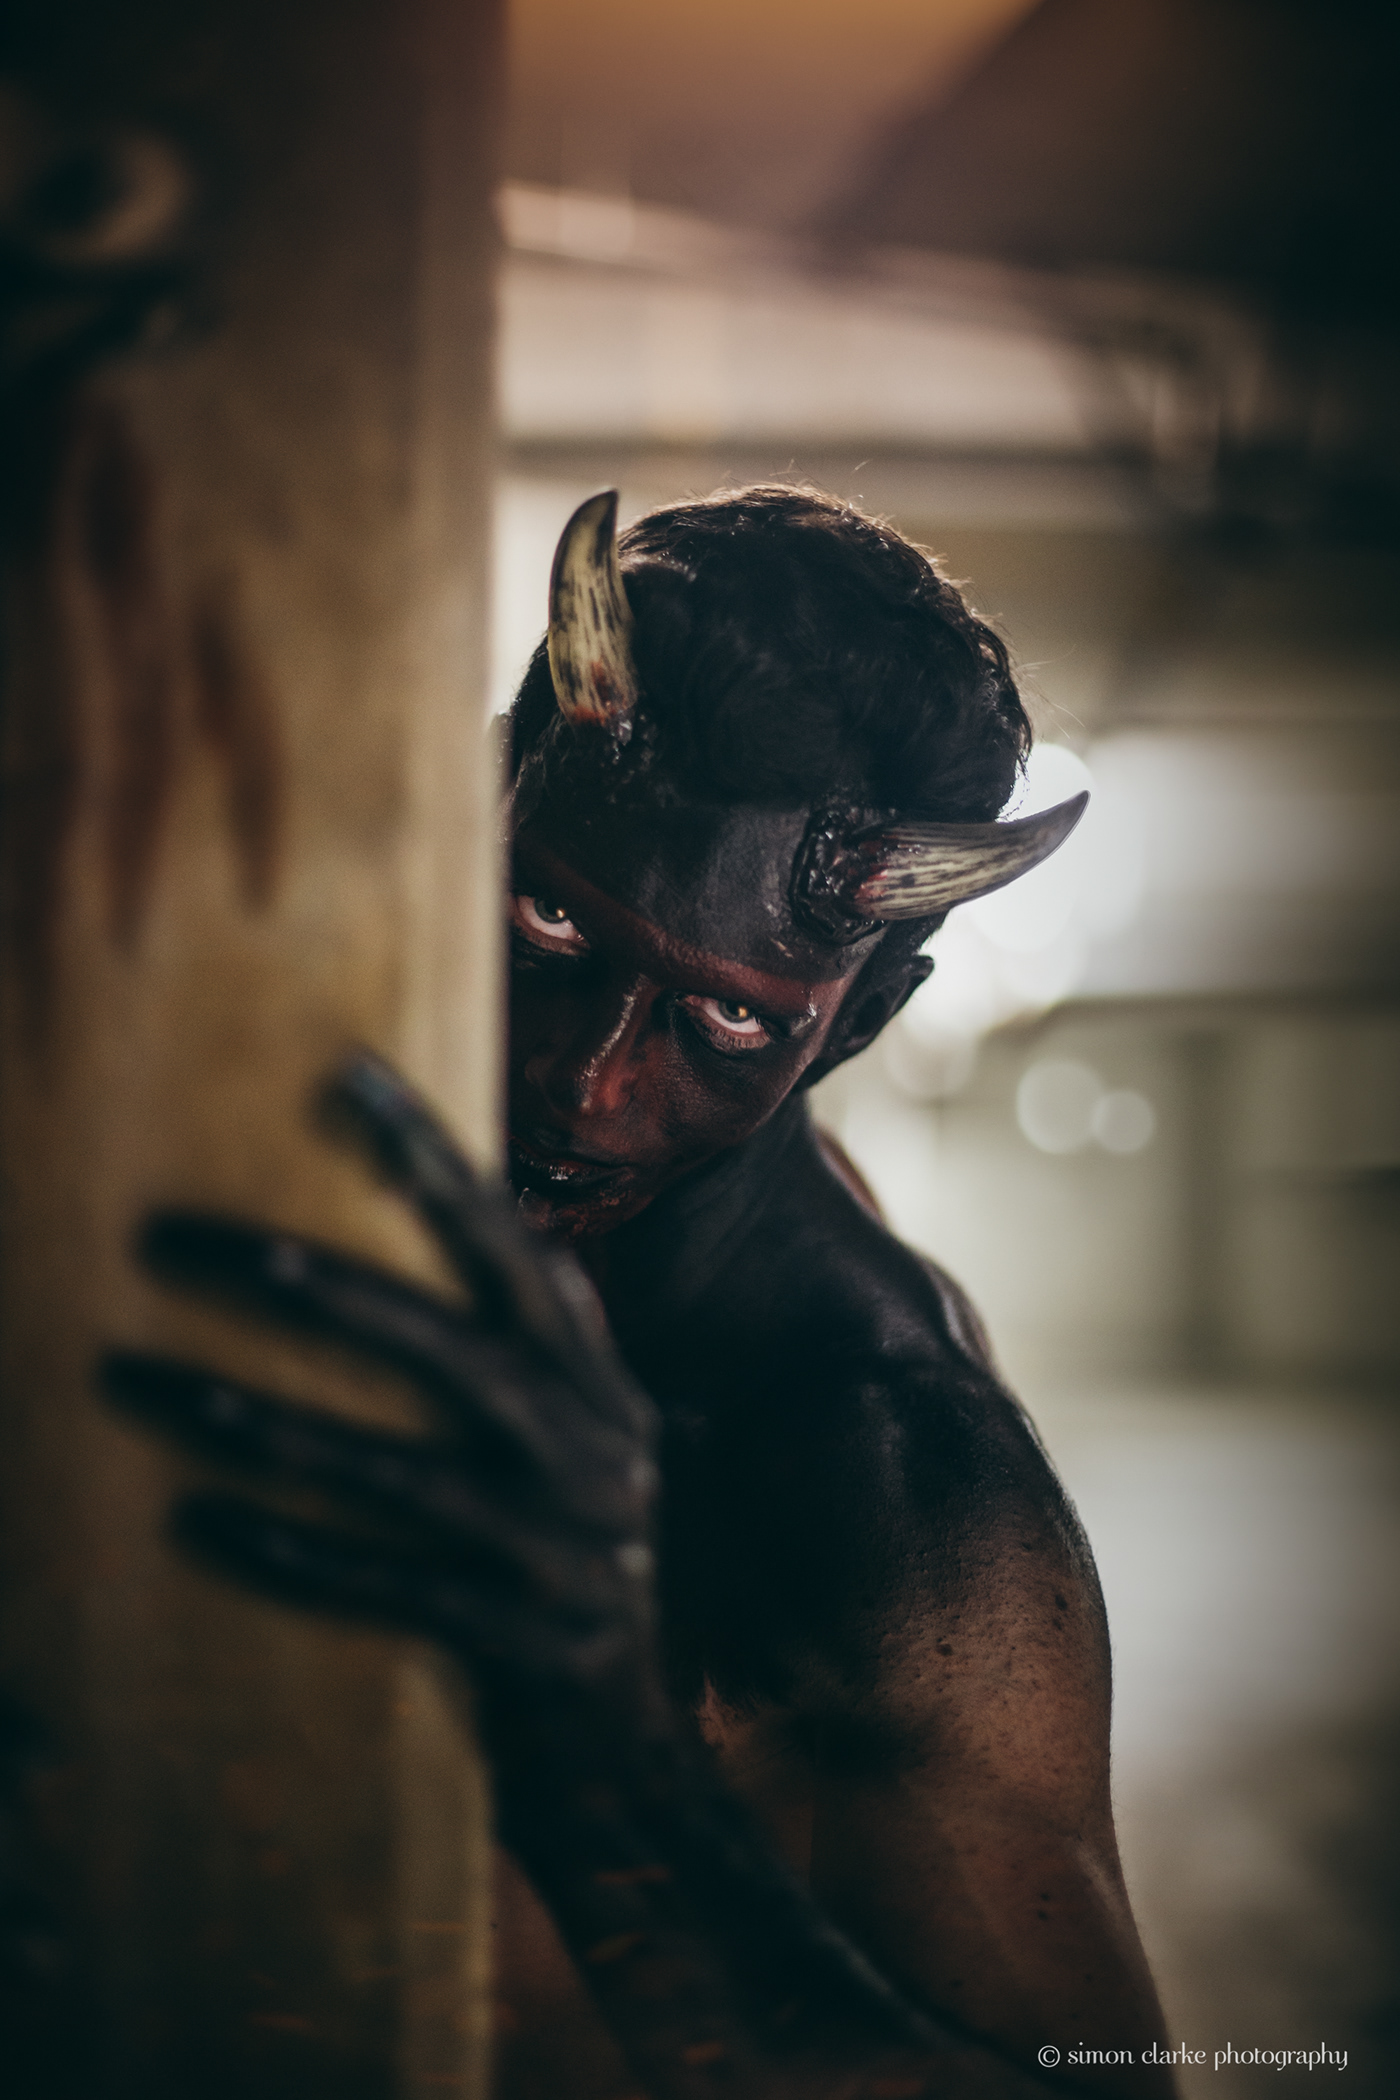 Satan devil makeup horns experimental